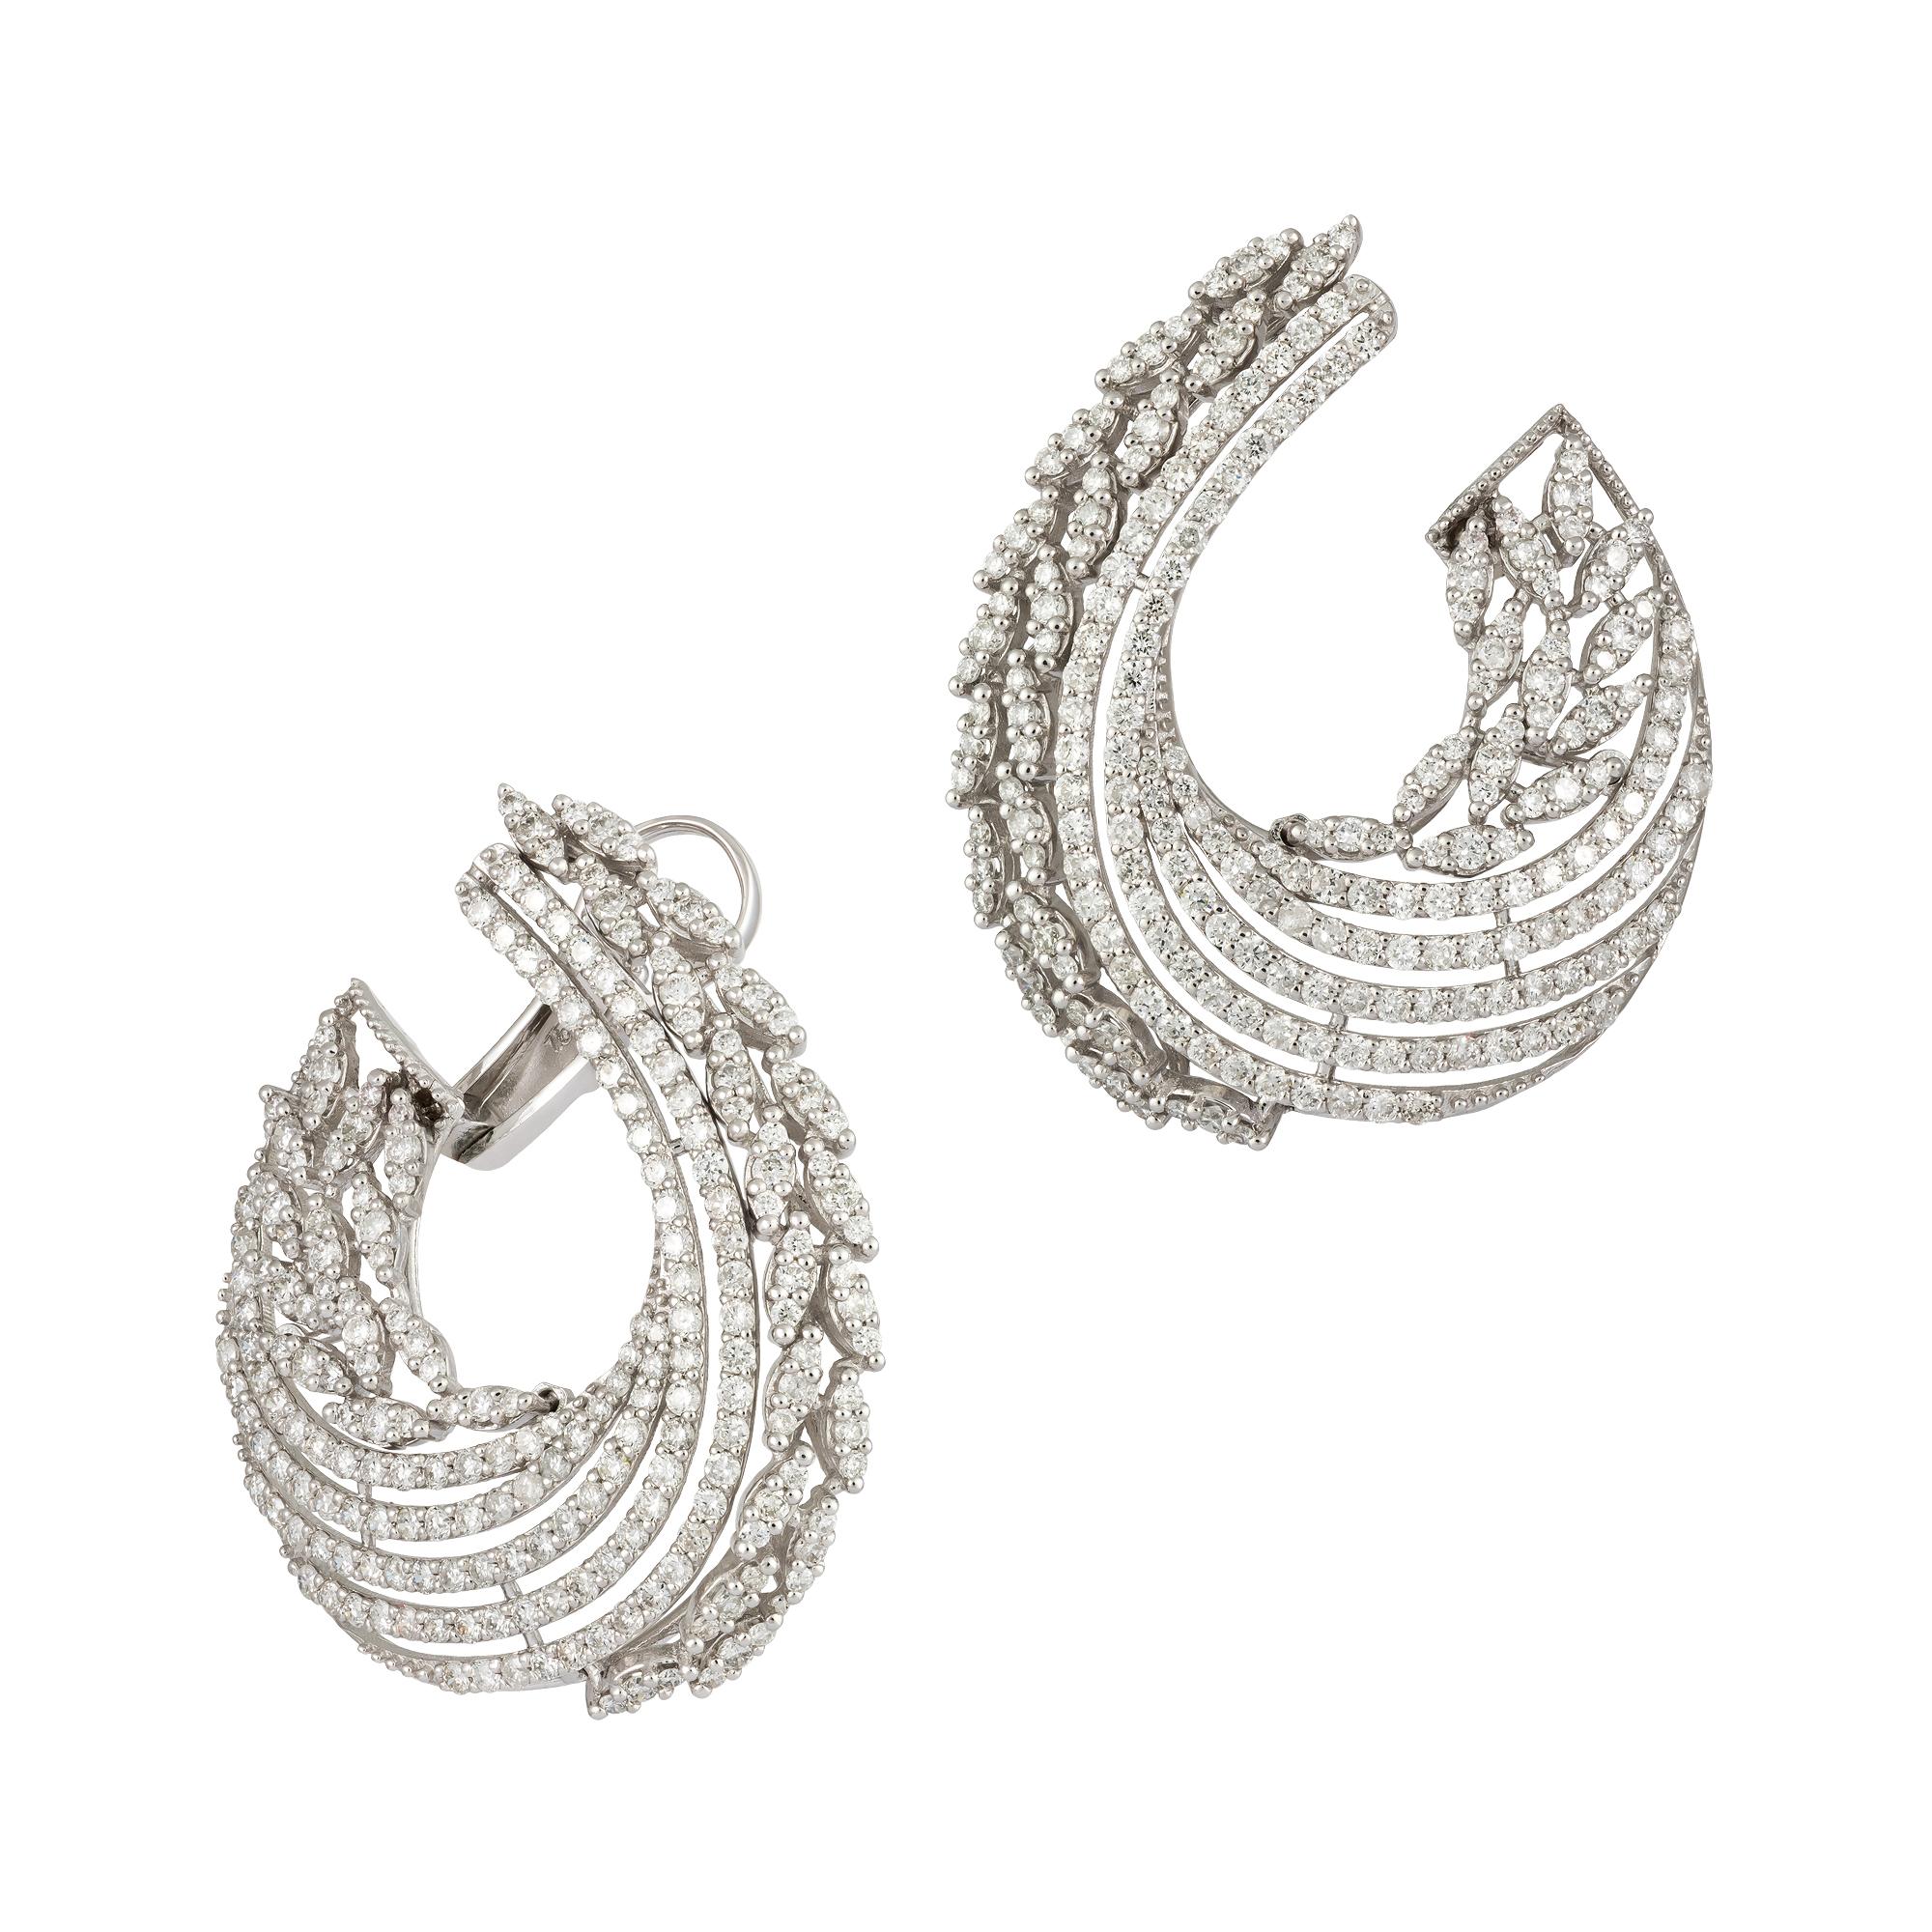 Modern Stunning Wings White Gold 18K Earrings Diamond For Her For Sale